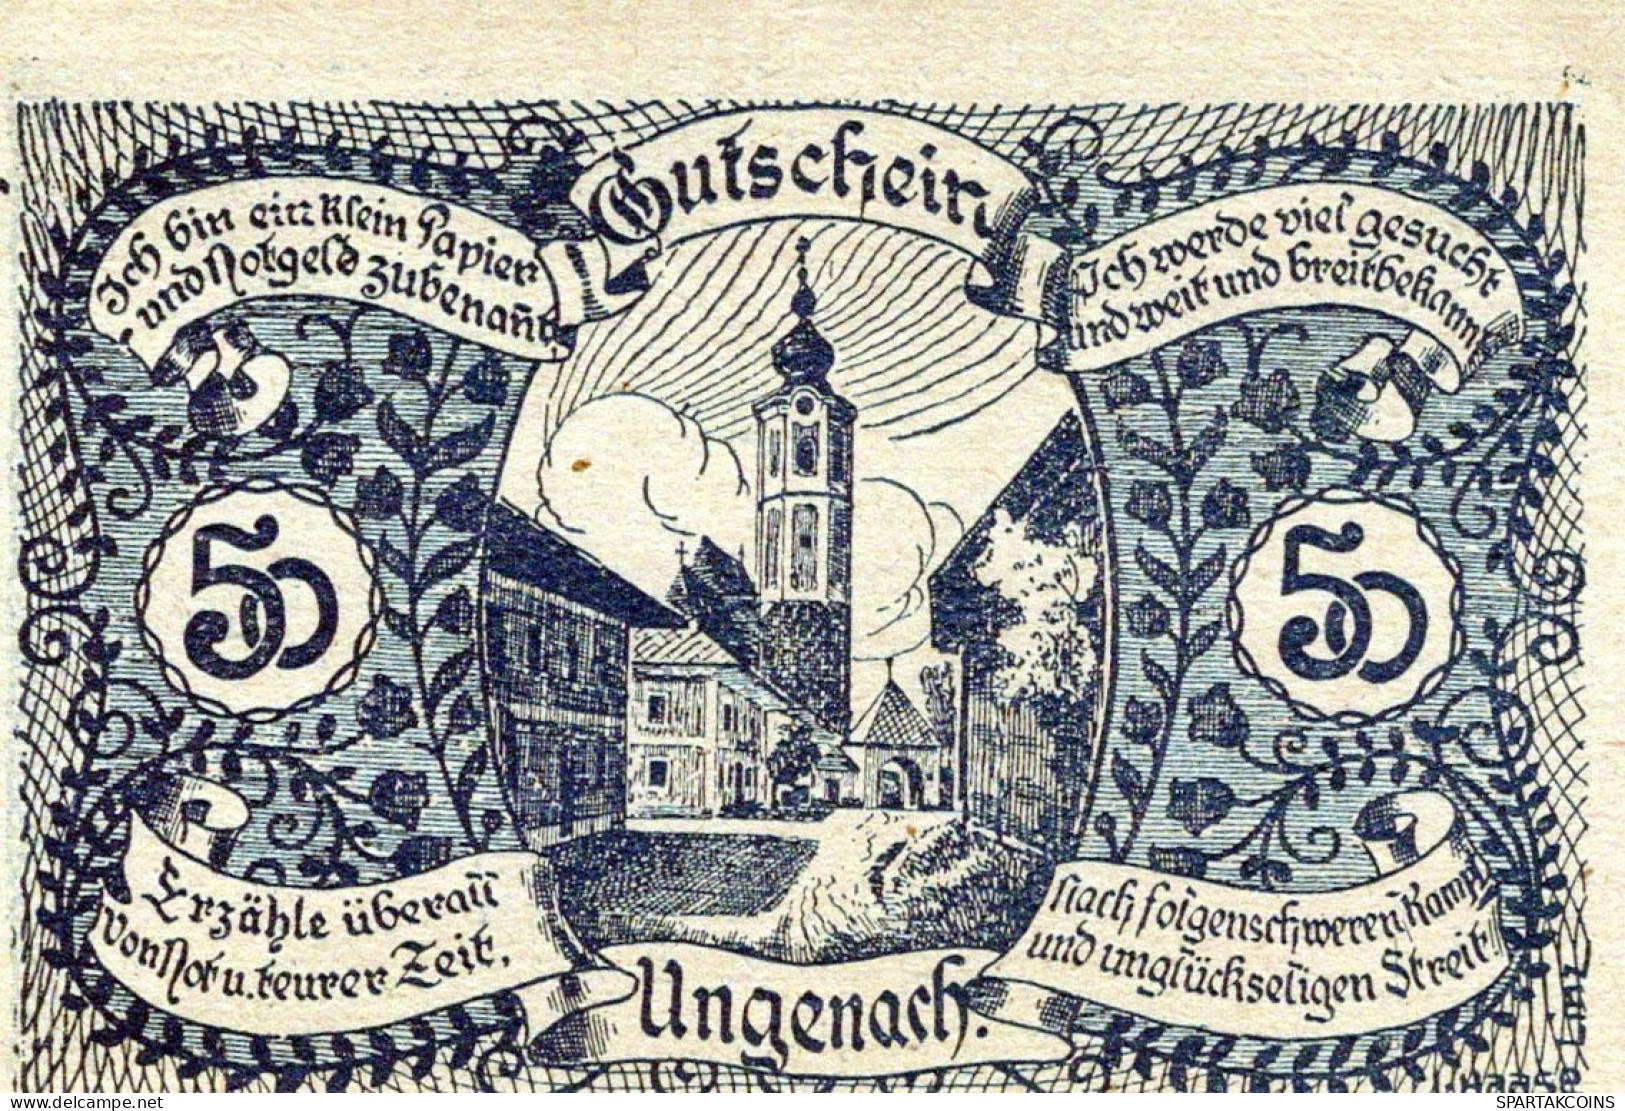 50 HELLER 1920 Stadt UNGENACH Oberösterreich Österreich Notgeld Banknote #PF262 - [11] Emissions Locales